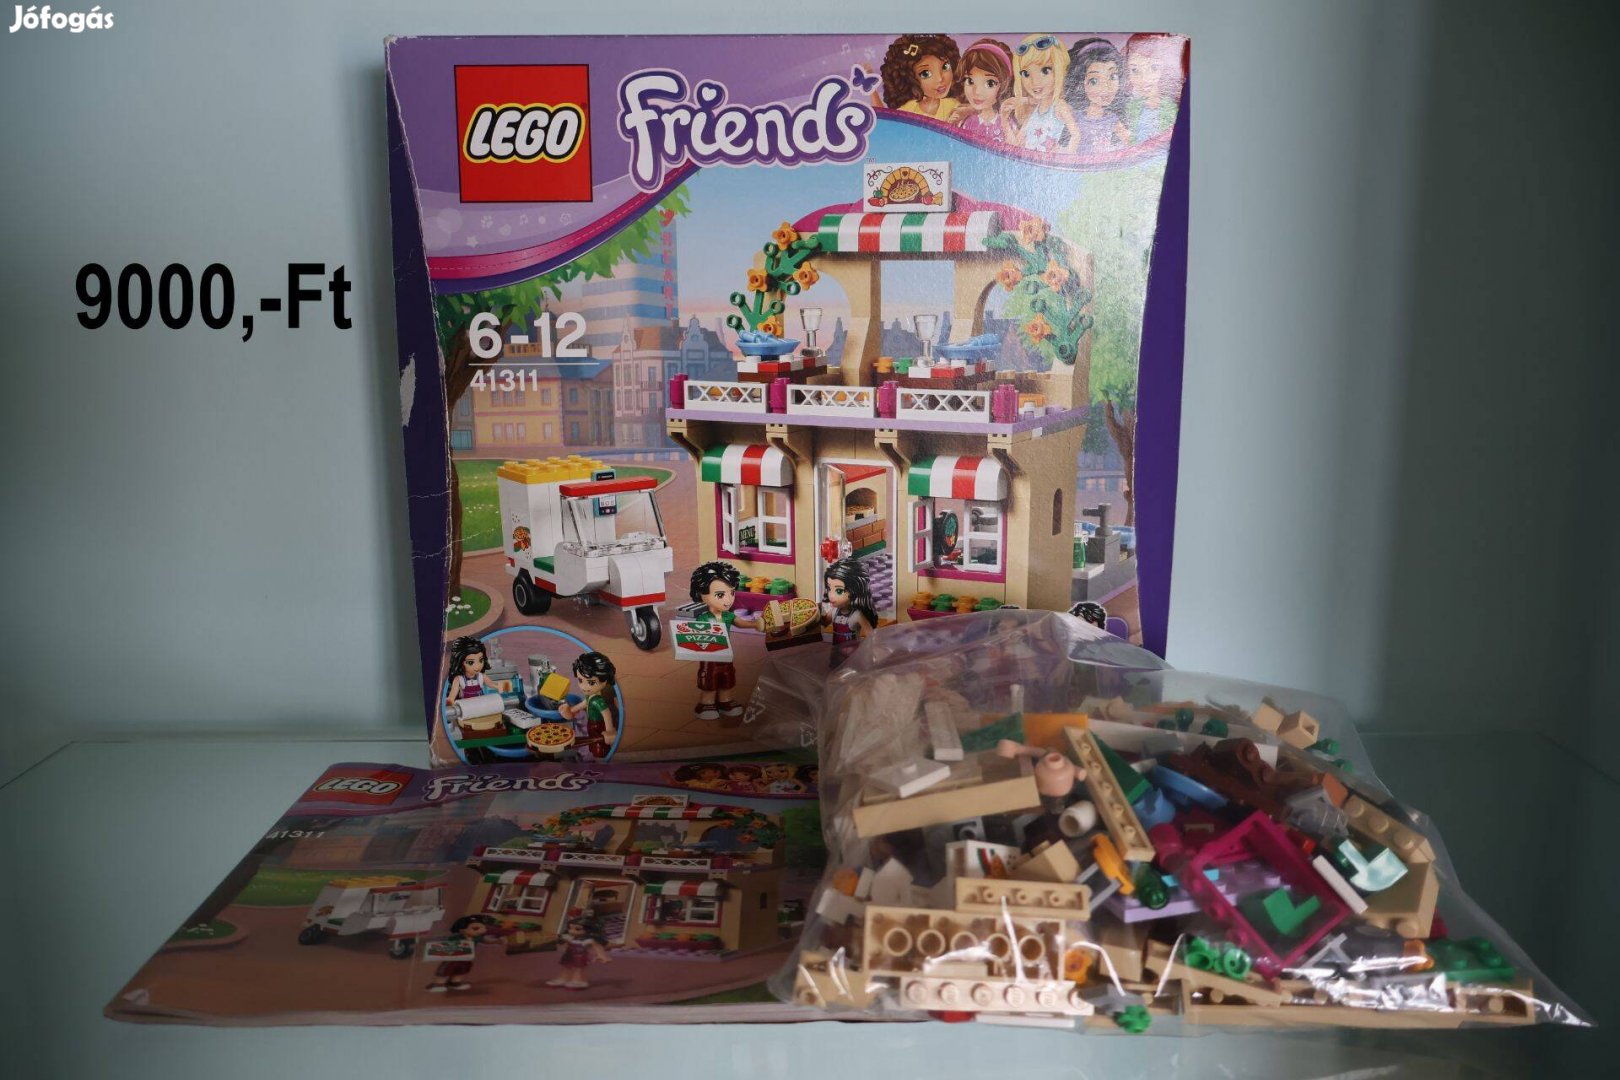 LEGO Friends 41311 Heartlake pizzéria